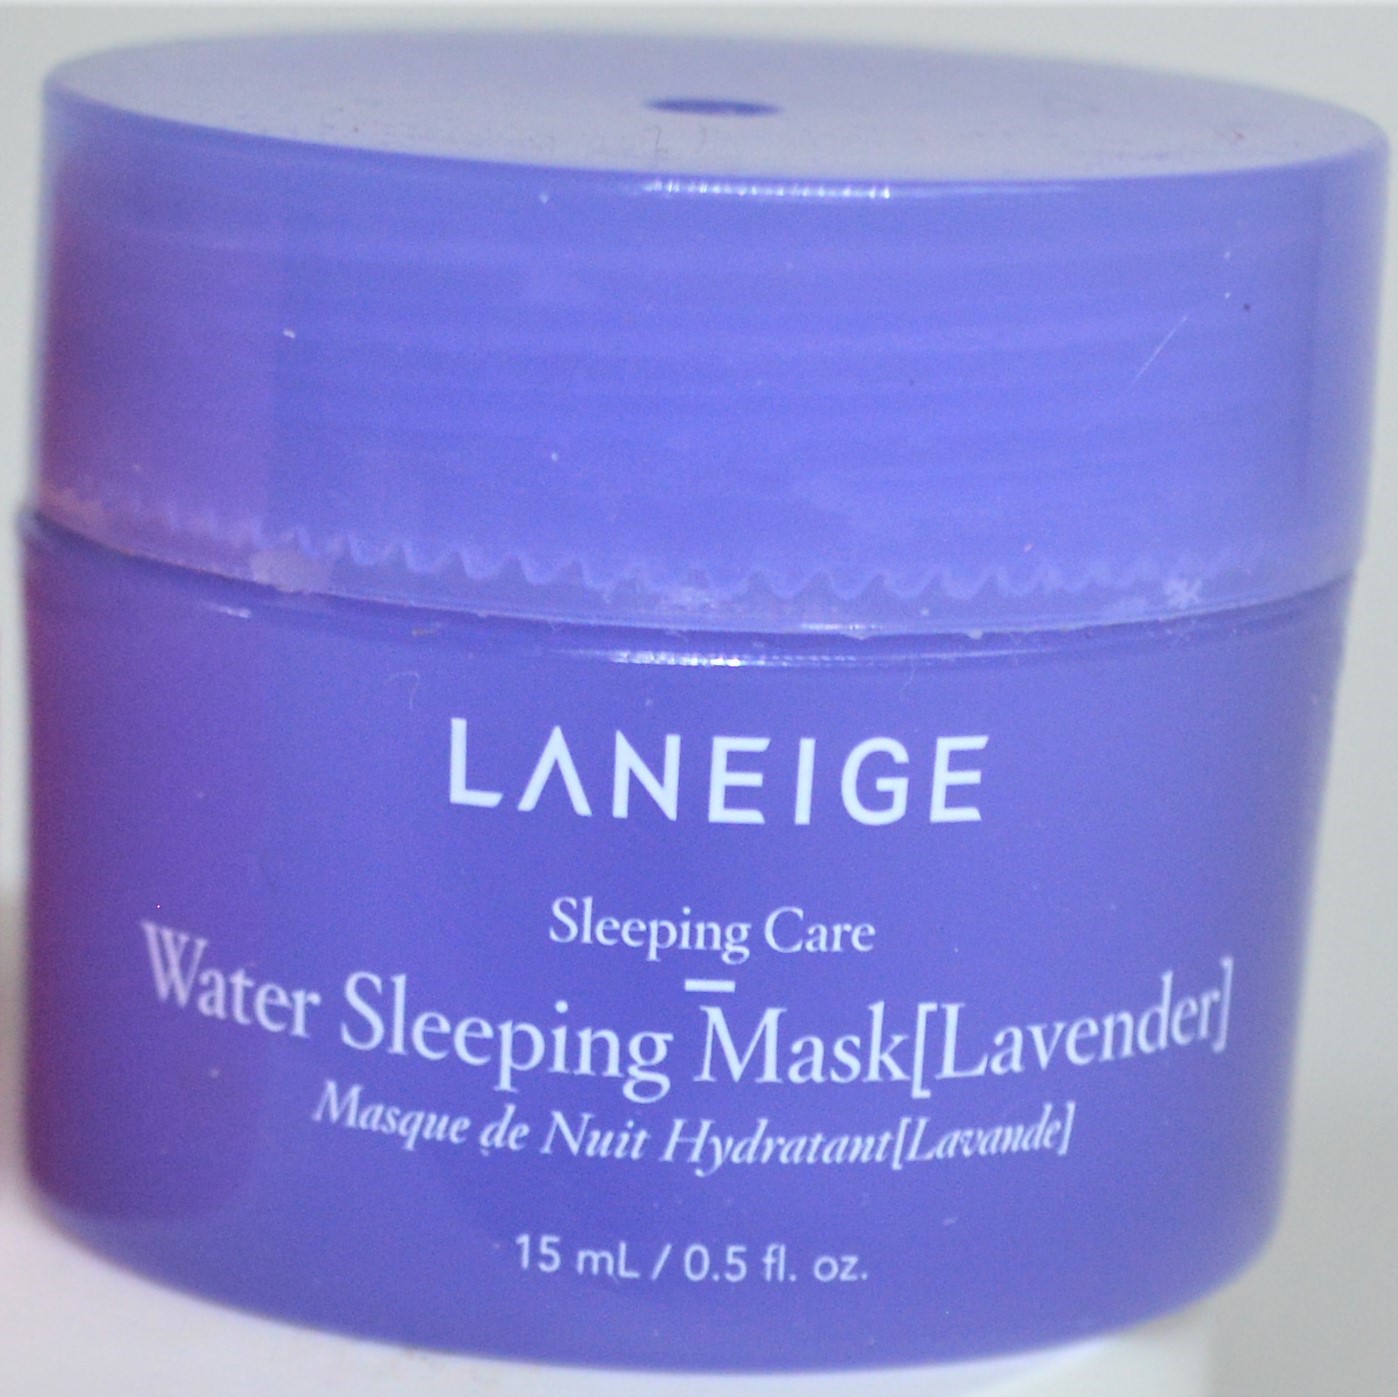 Water sleeping mask lavender